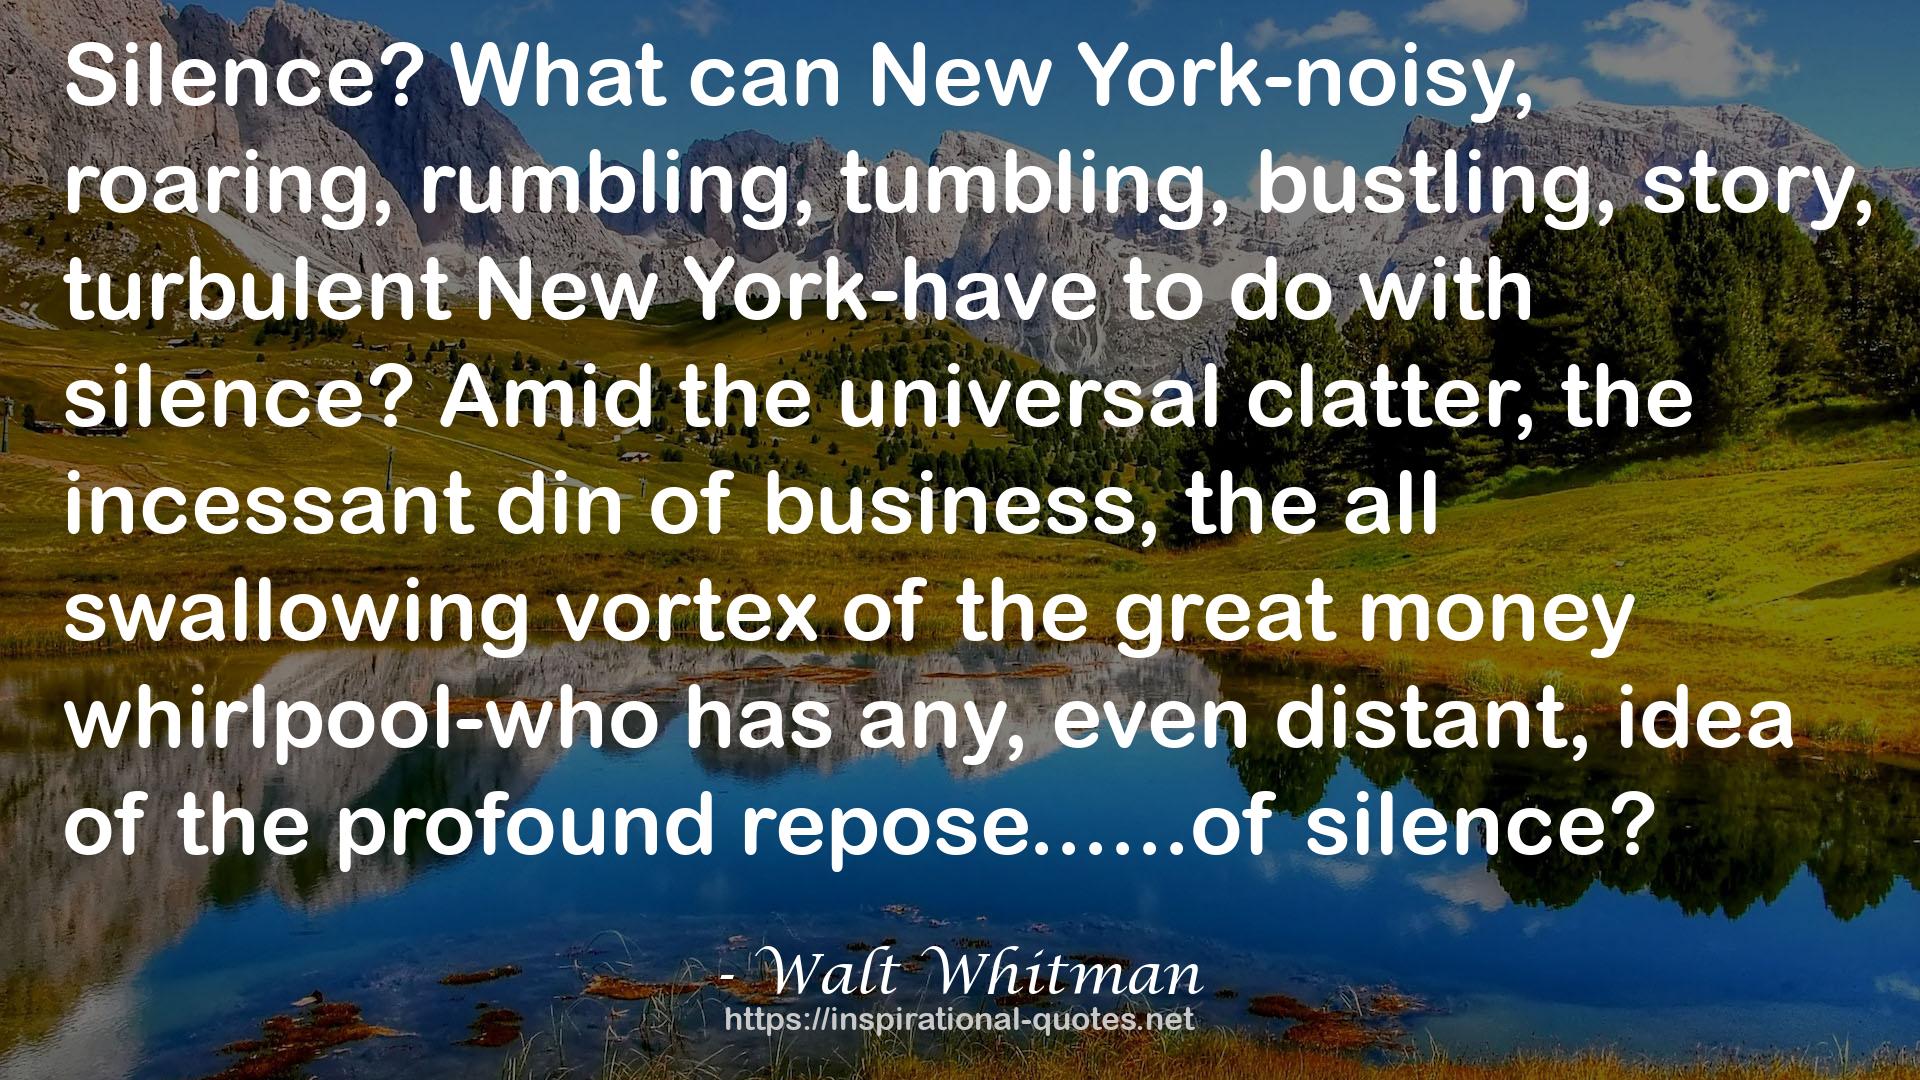 Walt Whitman QUOTES